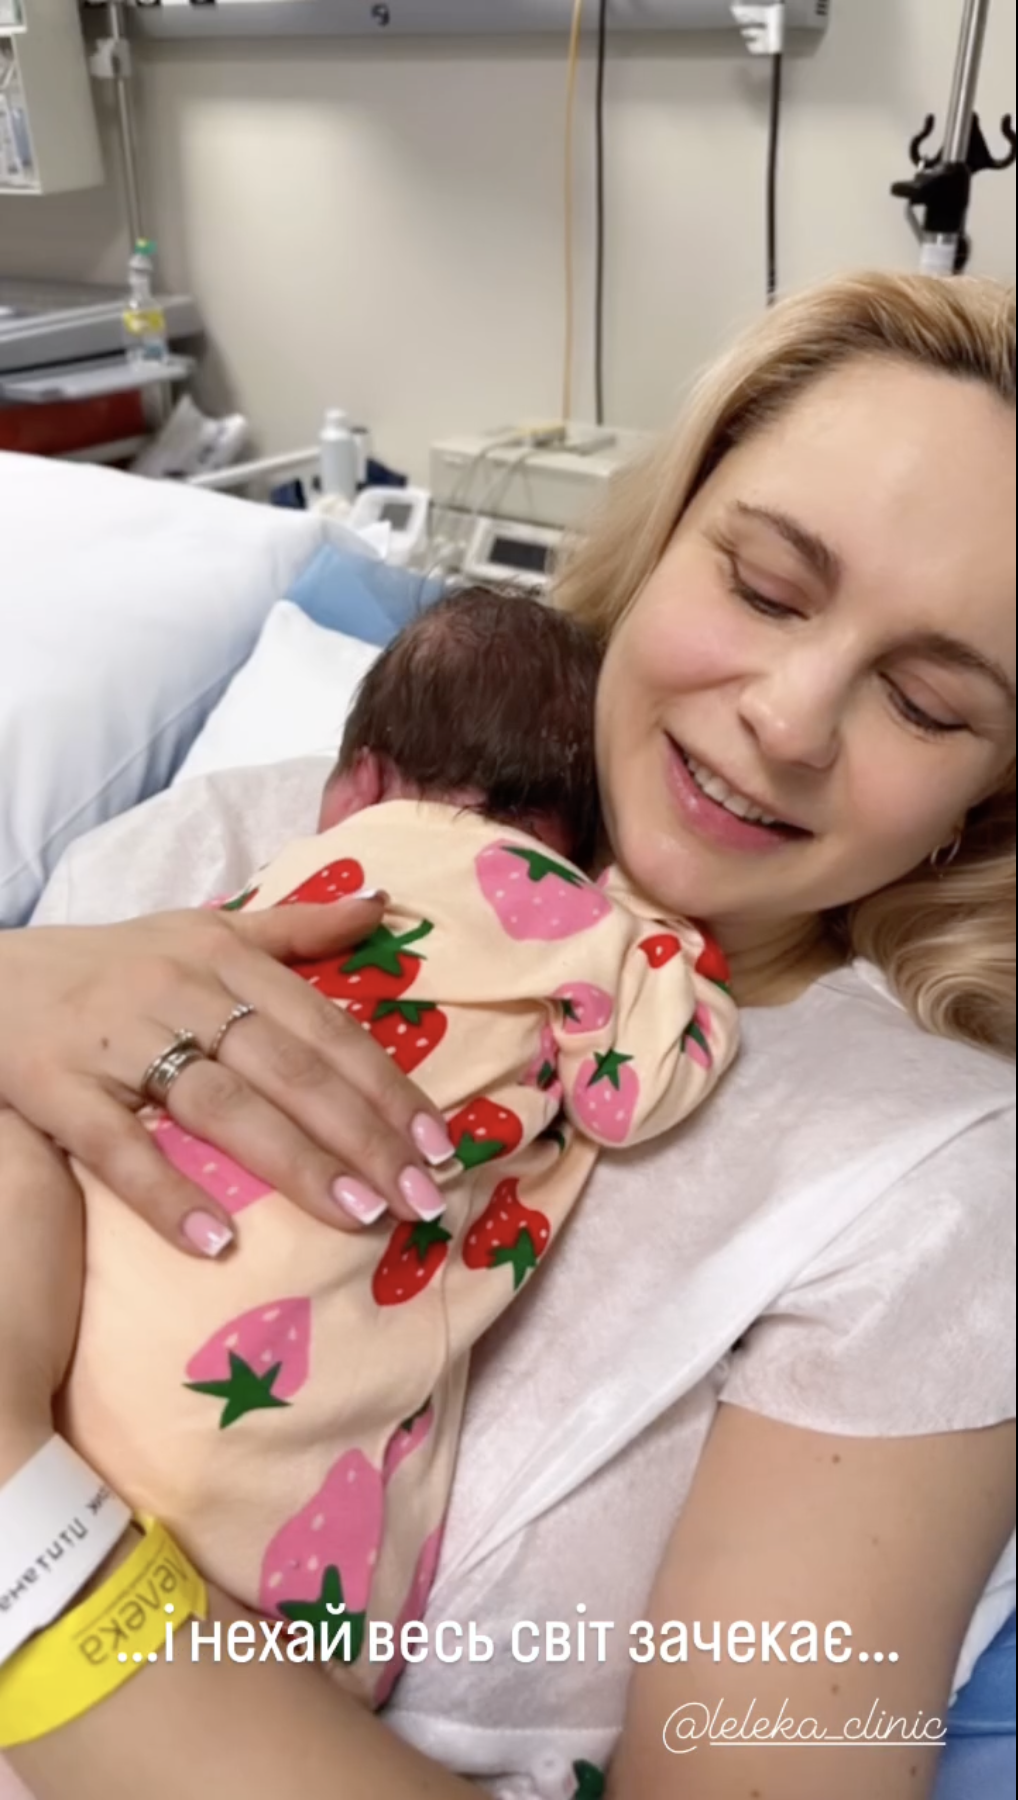 Лилия Ребрик, которая в третий раз стала мамой, умилила видео с новорожденной дочерью